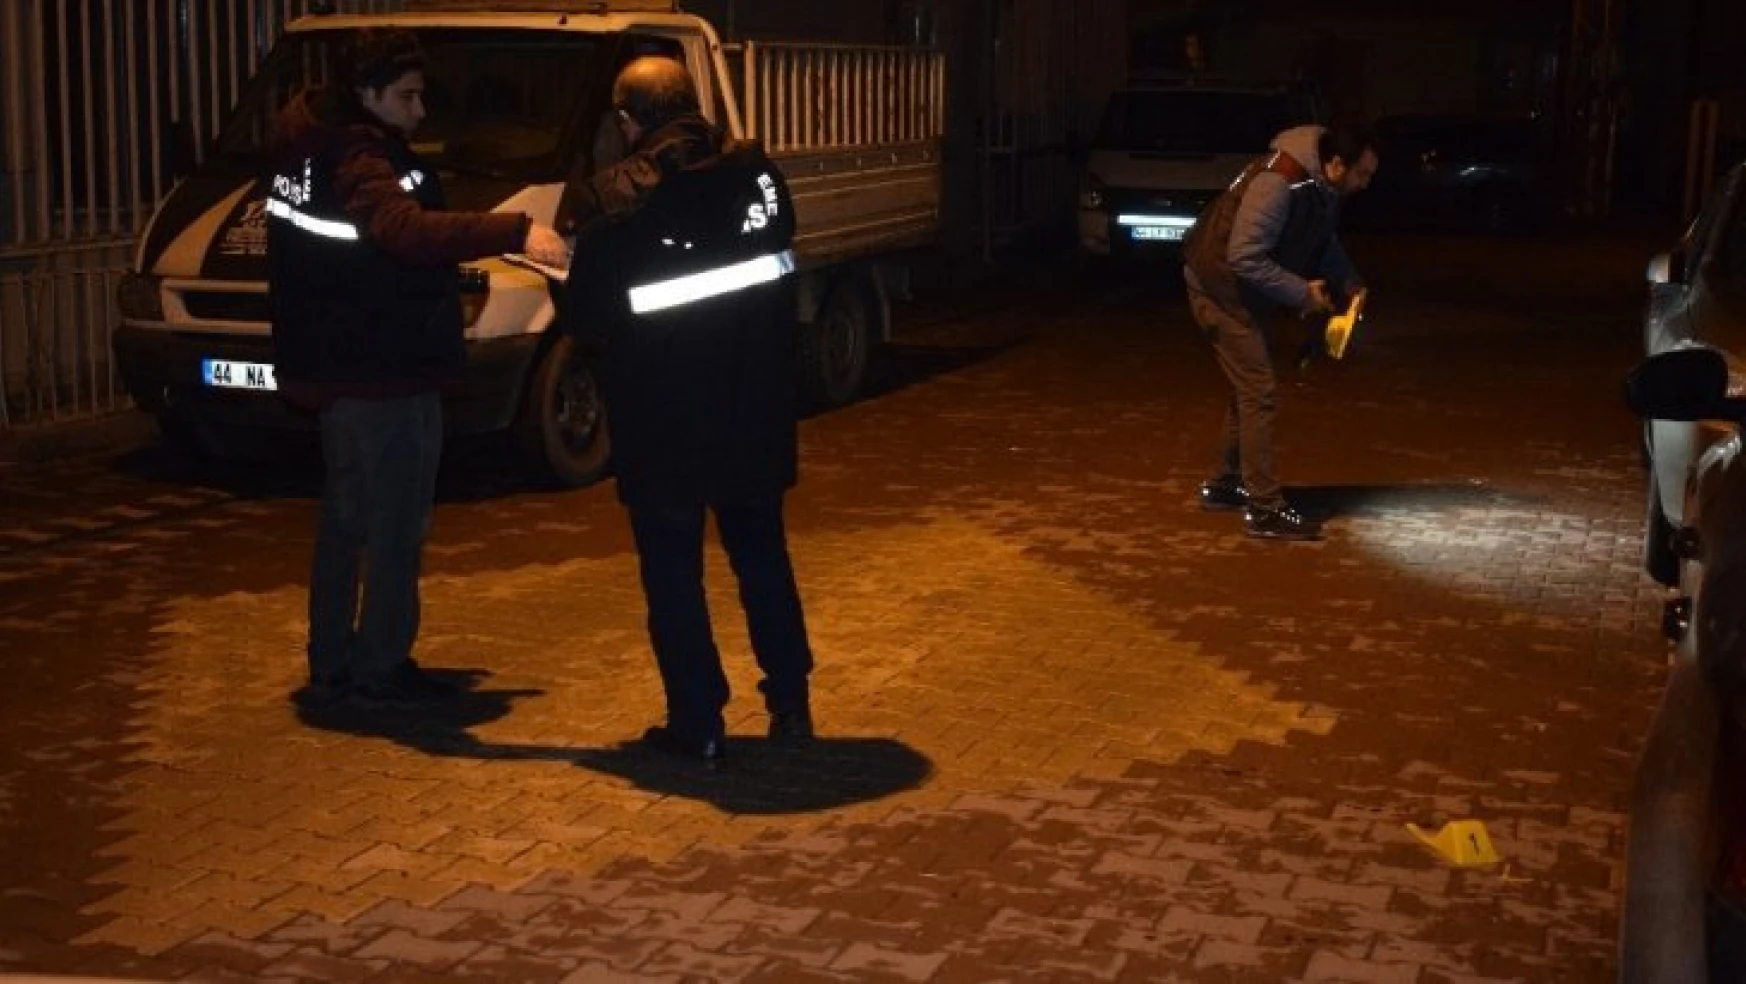 Malatya'da bir kişi silahla başından vurulmuş halde bulundu